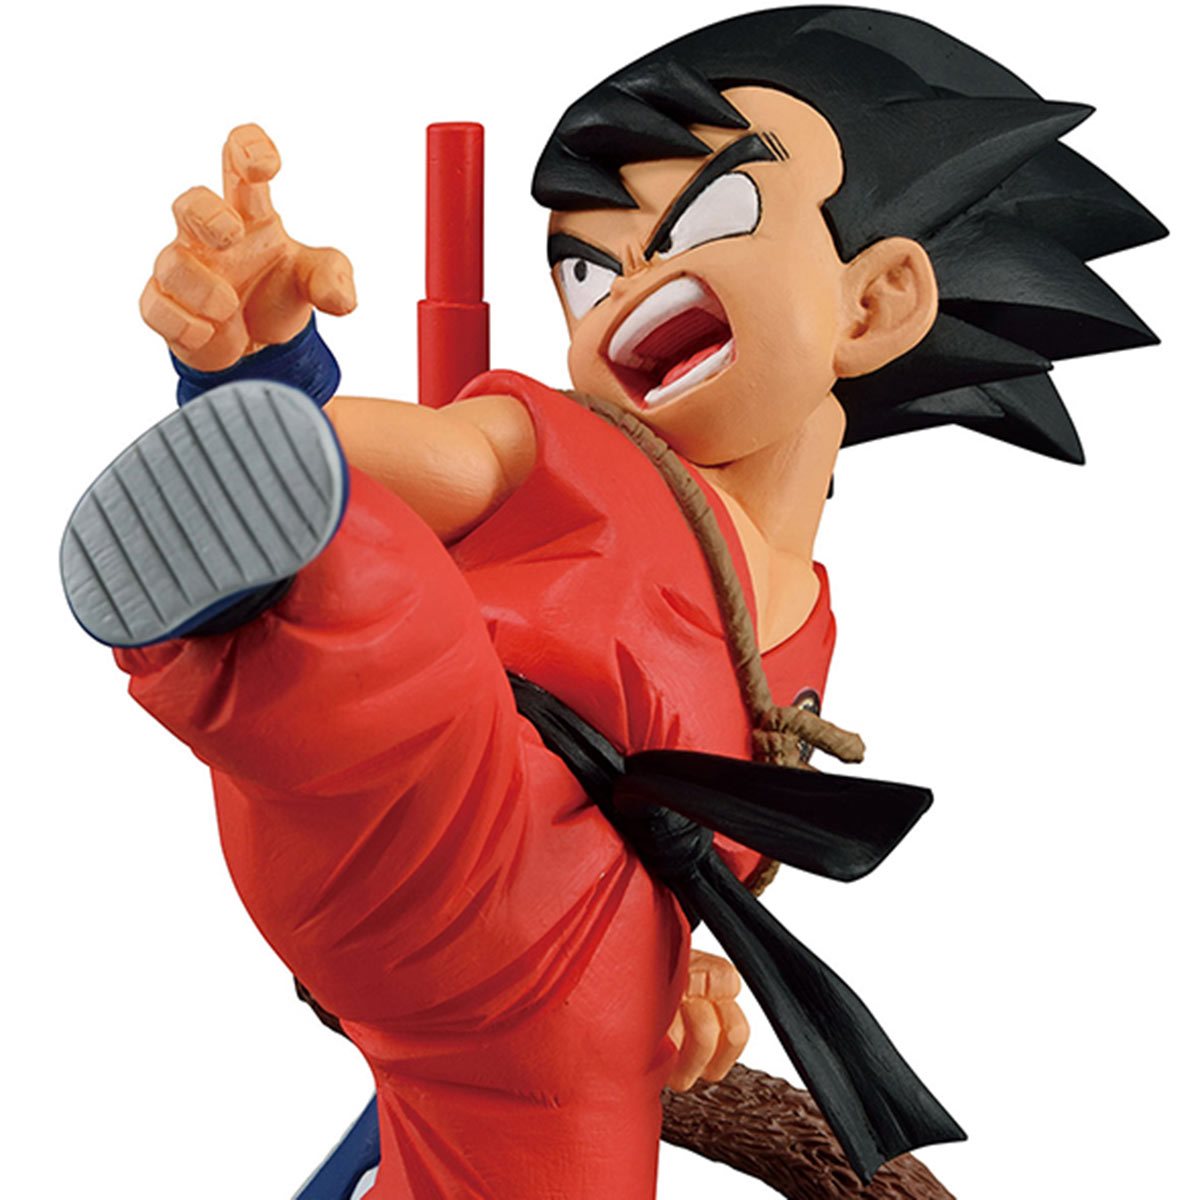 Dragon Ball - Son Goku Childhood Figure Match Makers